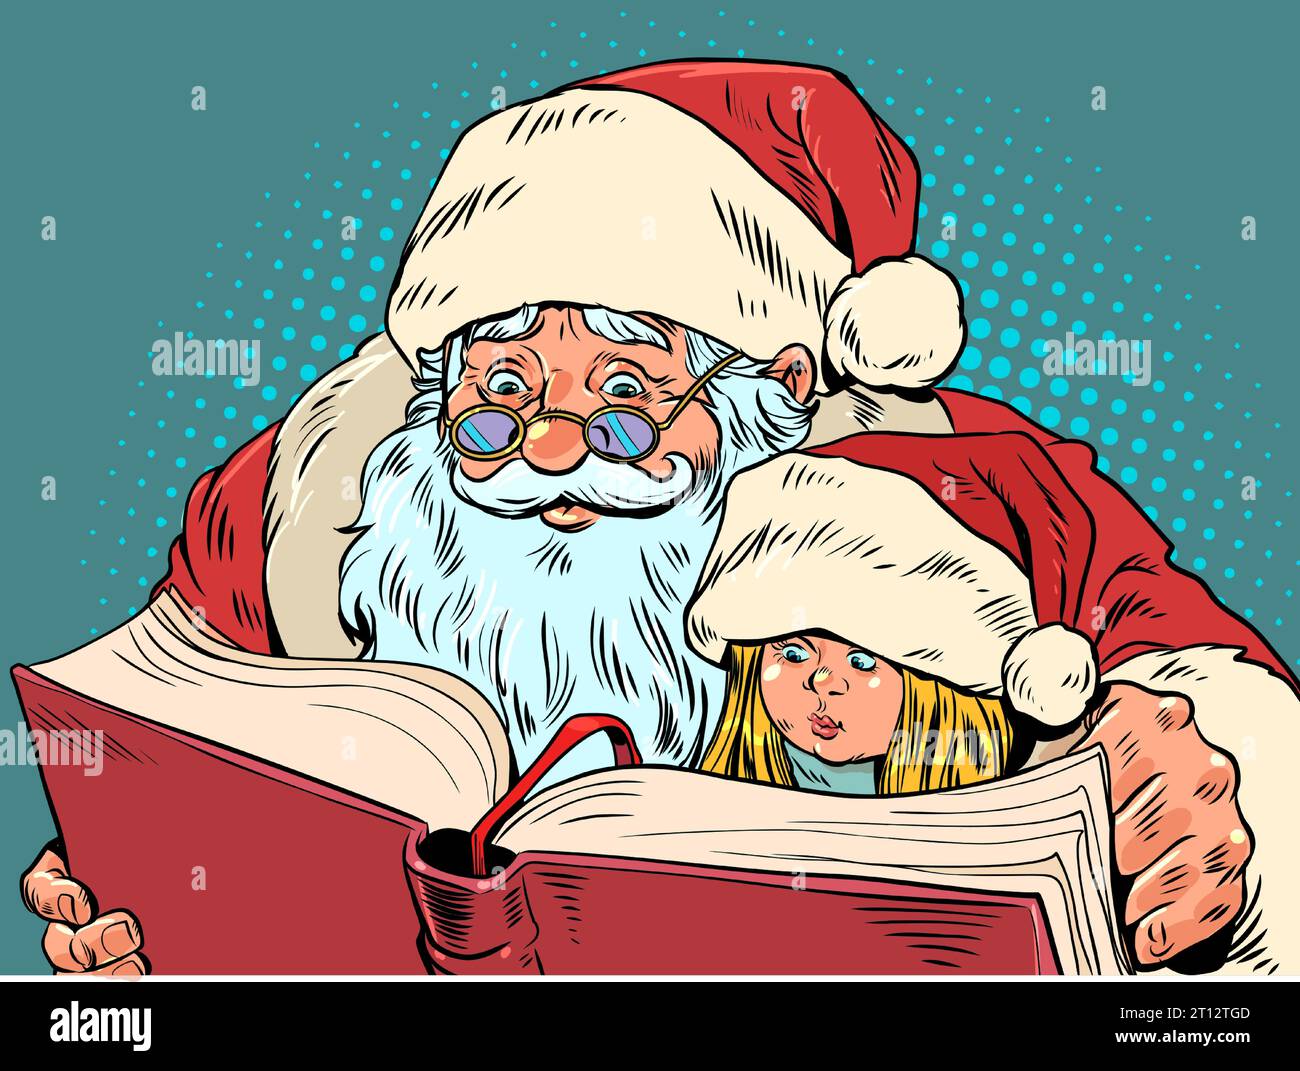 Passare il Natale con i propri cari. Babbo Natale sta leggendo un libro a una bambina. Vendite stagionali per librerie e mercati. Pop Art retro Illustrazione Vettoriale